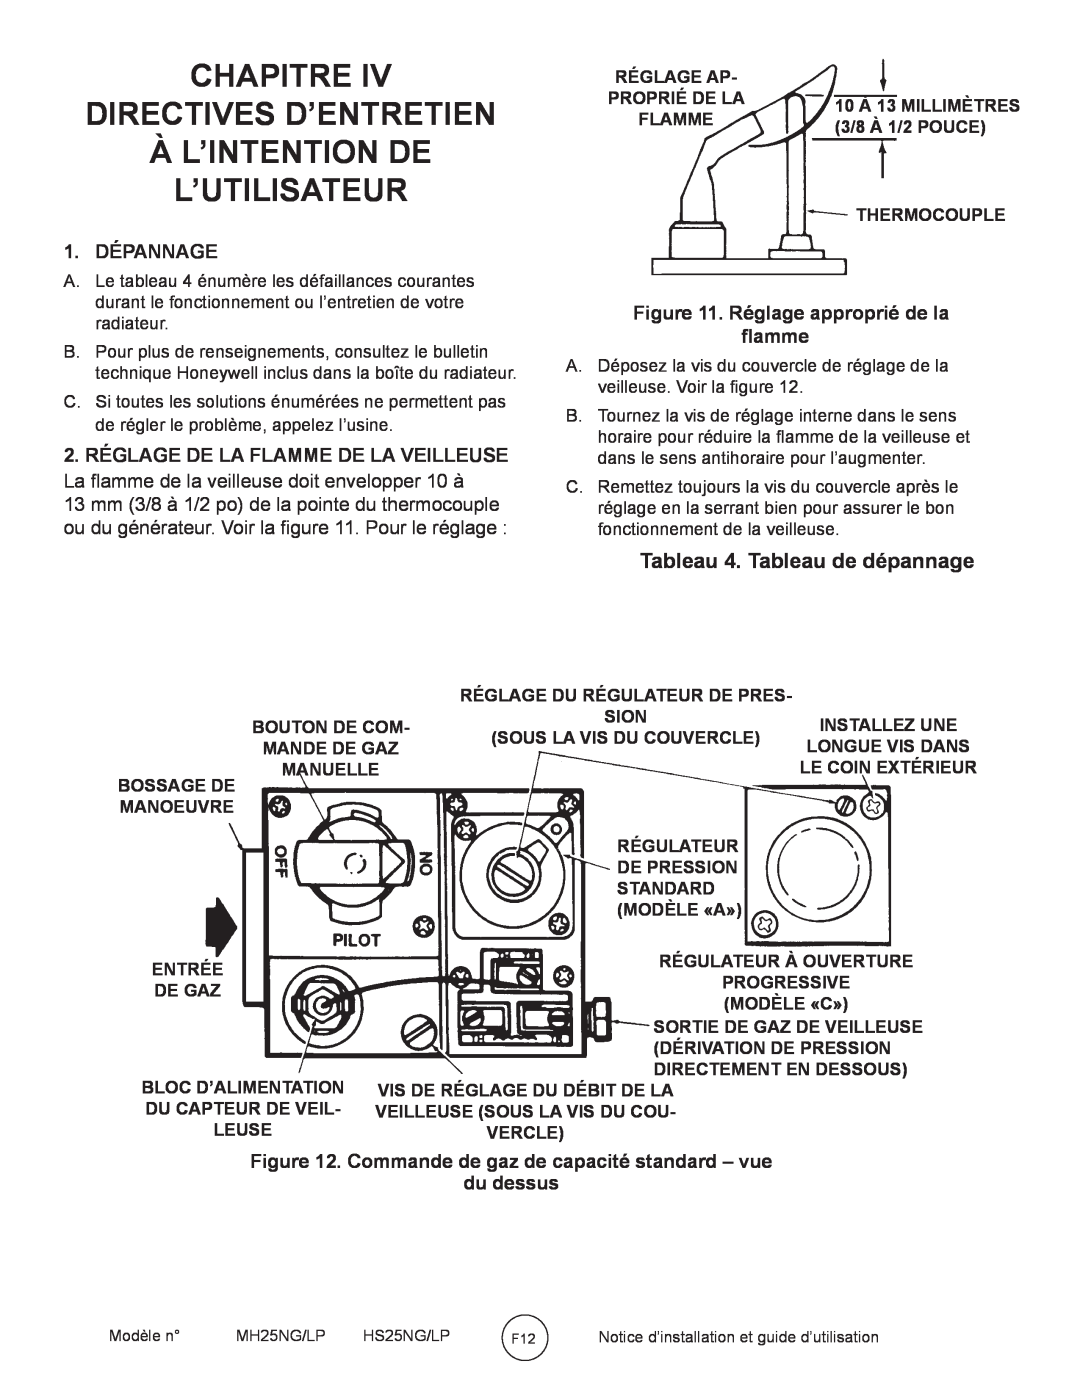 Mr. Heater MH25NG/LP Chapitre Directives D’Entretien, Àl’Intention De L’Utilisateur, Tableau 4. Tableau de dépannage 